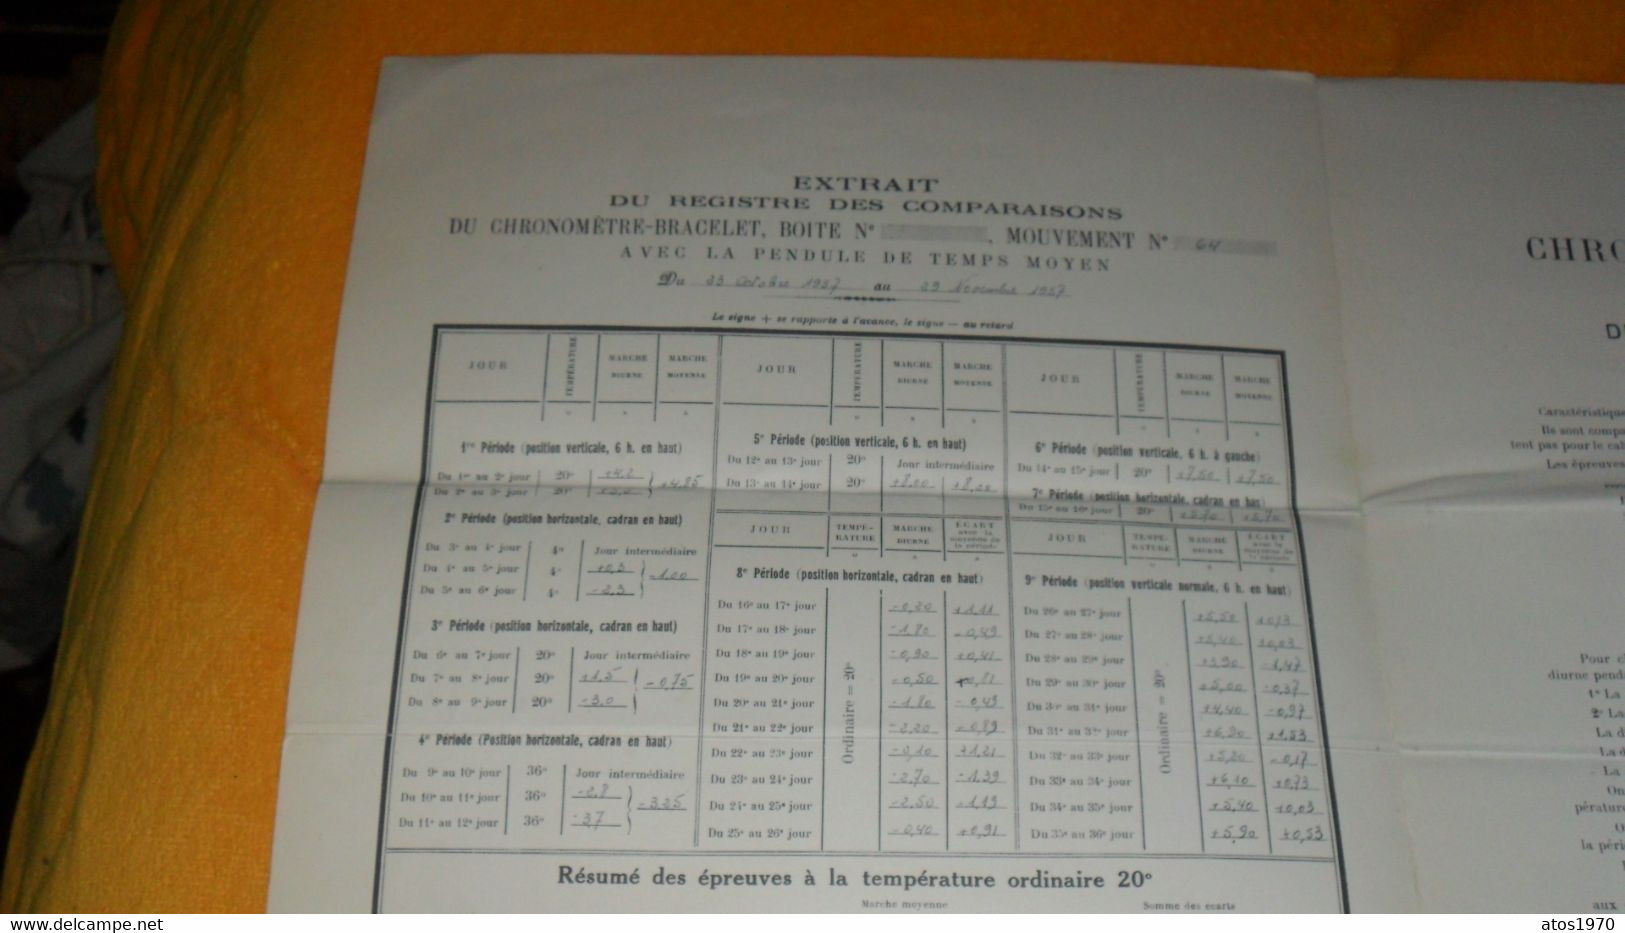 DIPLOME ANCIEN DE 1957../ MINISTERE DE L'EDUCATION NATIONALE OBSERVATOIRE NATIONAL DE BESANCON..PHILIPPE & CIE..ANOTATIO - Diploma's En Schoolrapporten